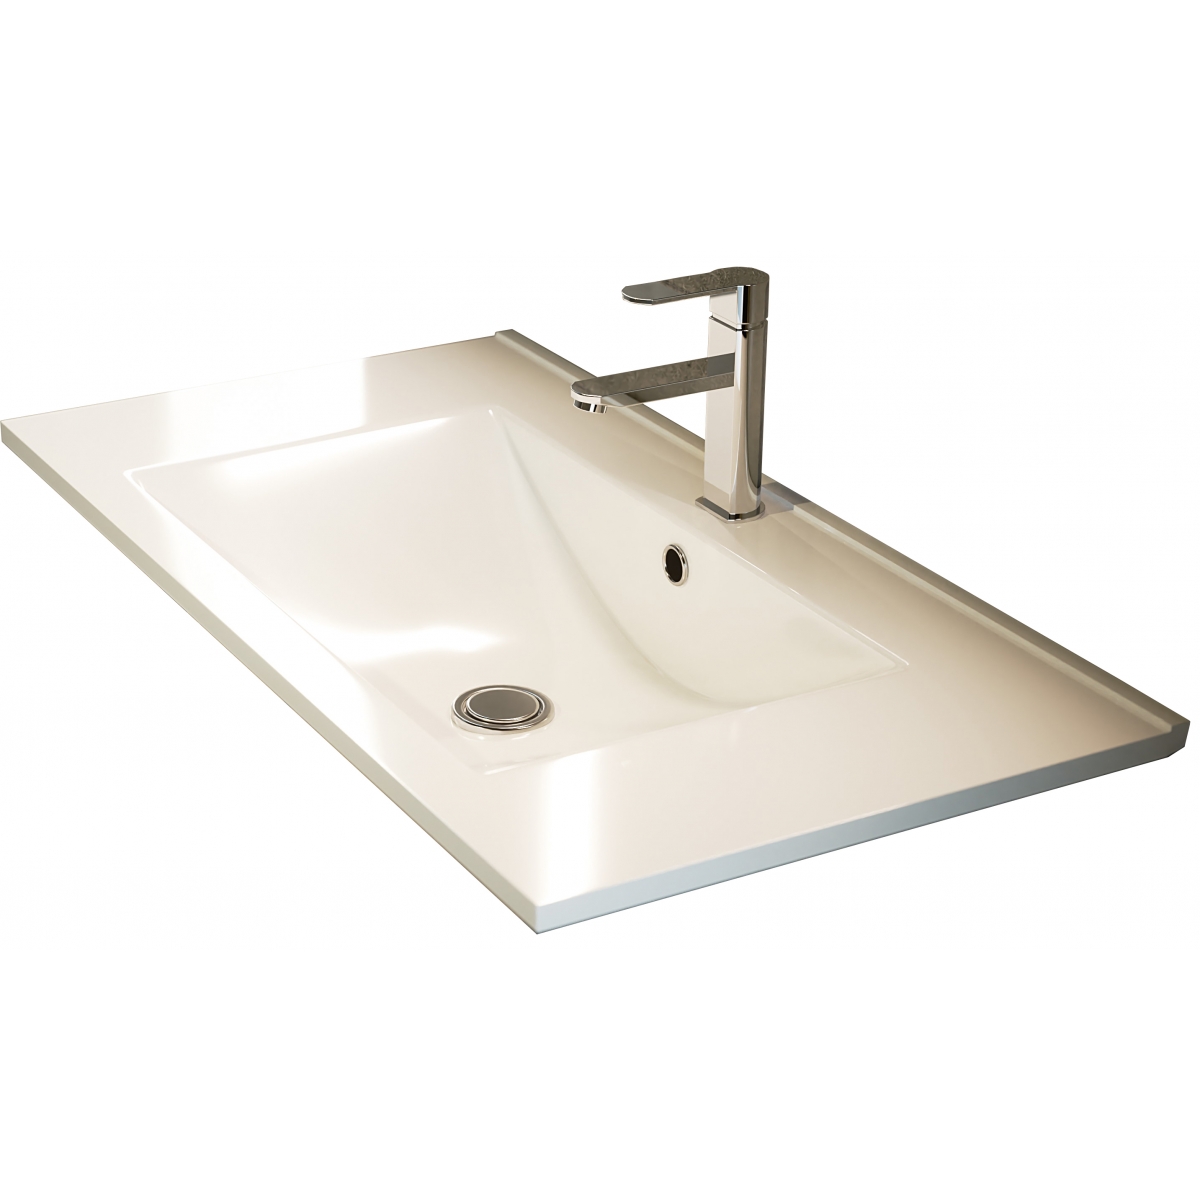 Fotos ambiente de Mueble de baño suspendido Dundee de 100 cm de ancho color Cemento con lavabo integrado [54475]